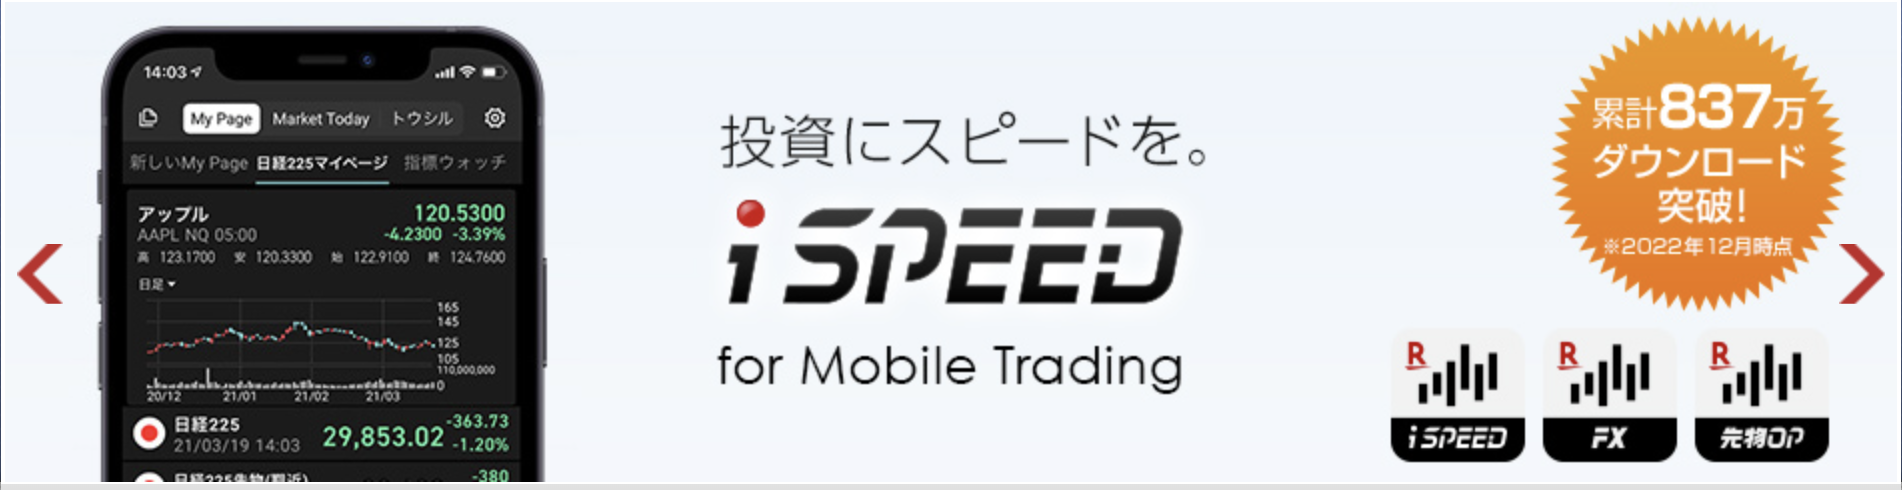 楽天証券_iSPEED_公式サイト